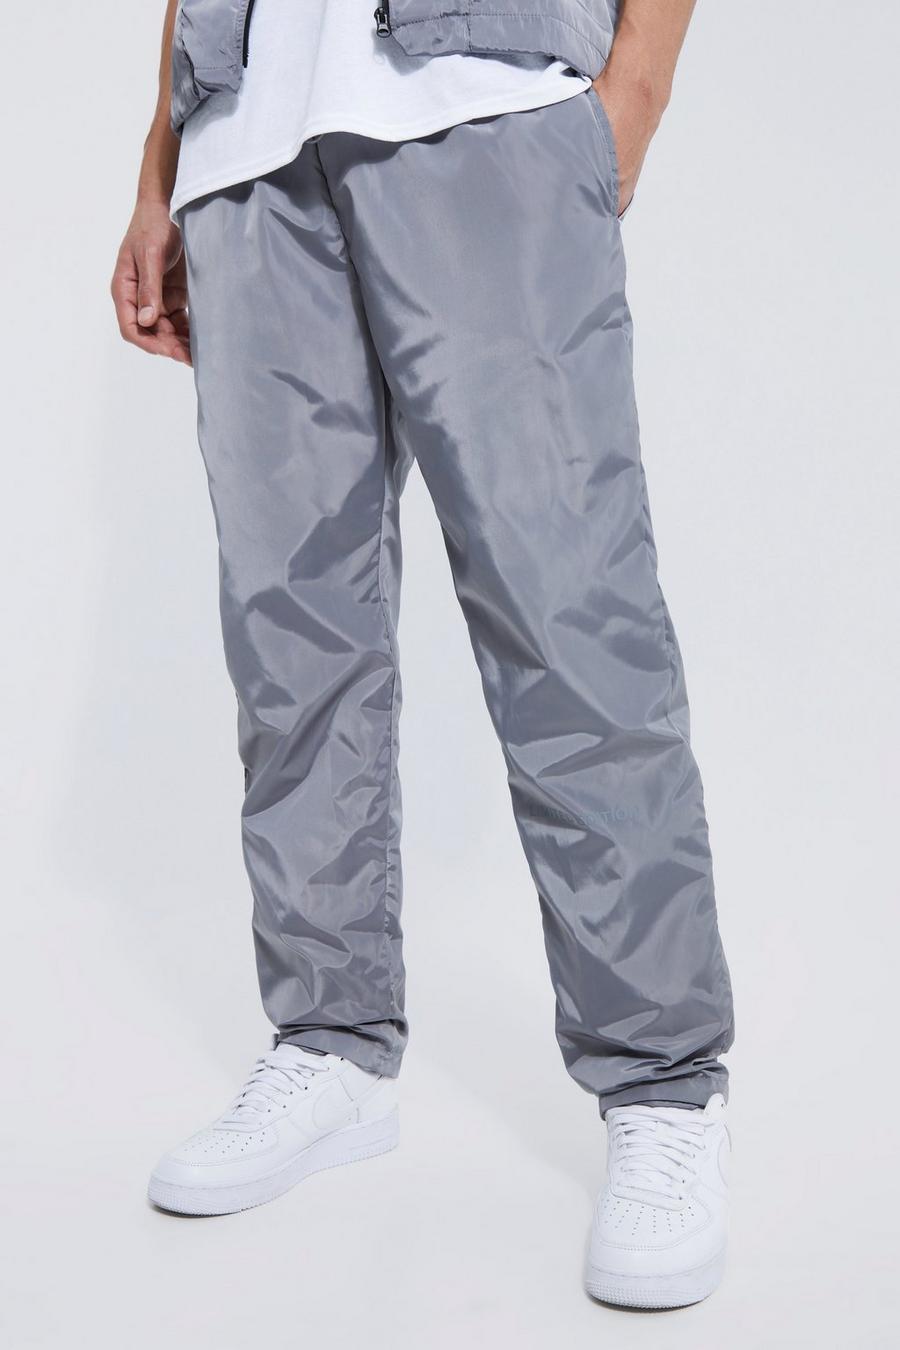 Tall Elastic Waist Limited Edition Trouser, Grey grigio